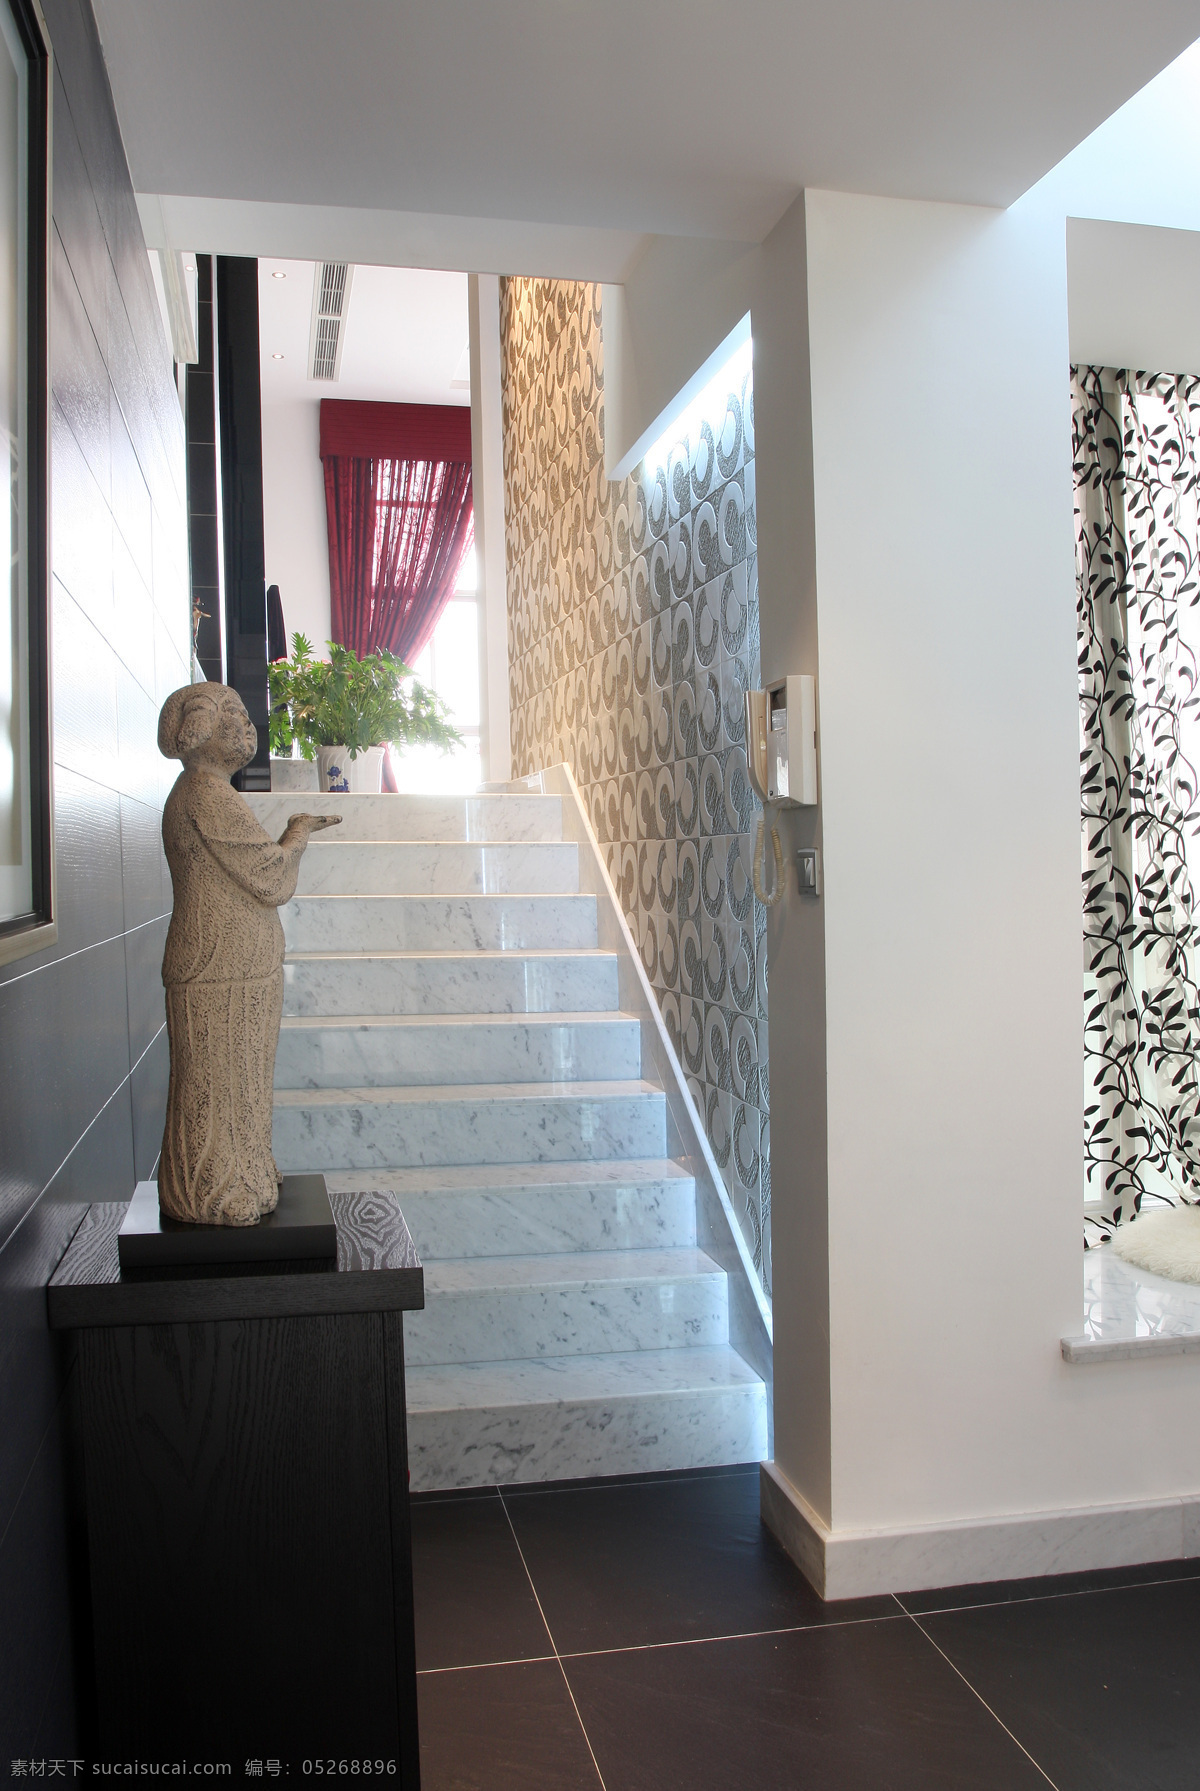 室内设计 实景 照片 资料 室内 楼梯 现代 雕塑 室内摄影 建筑园林